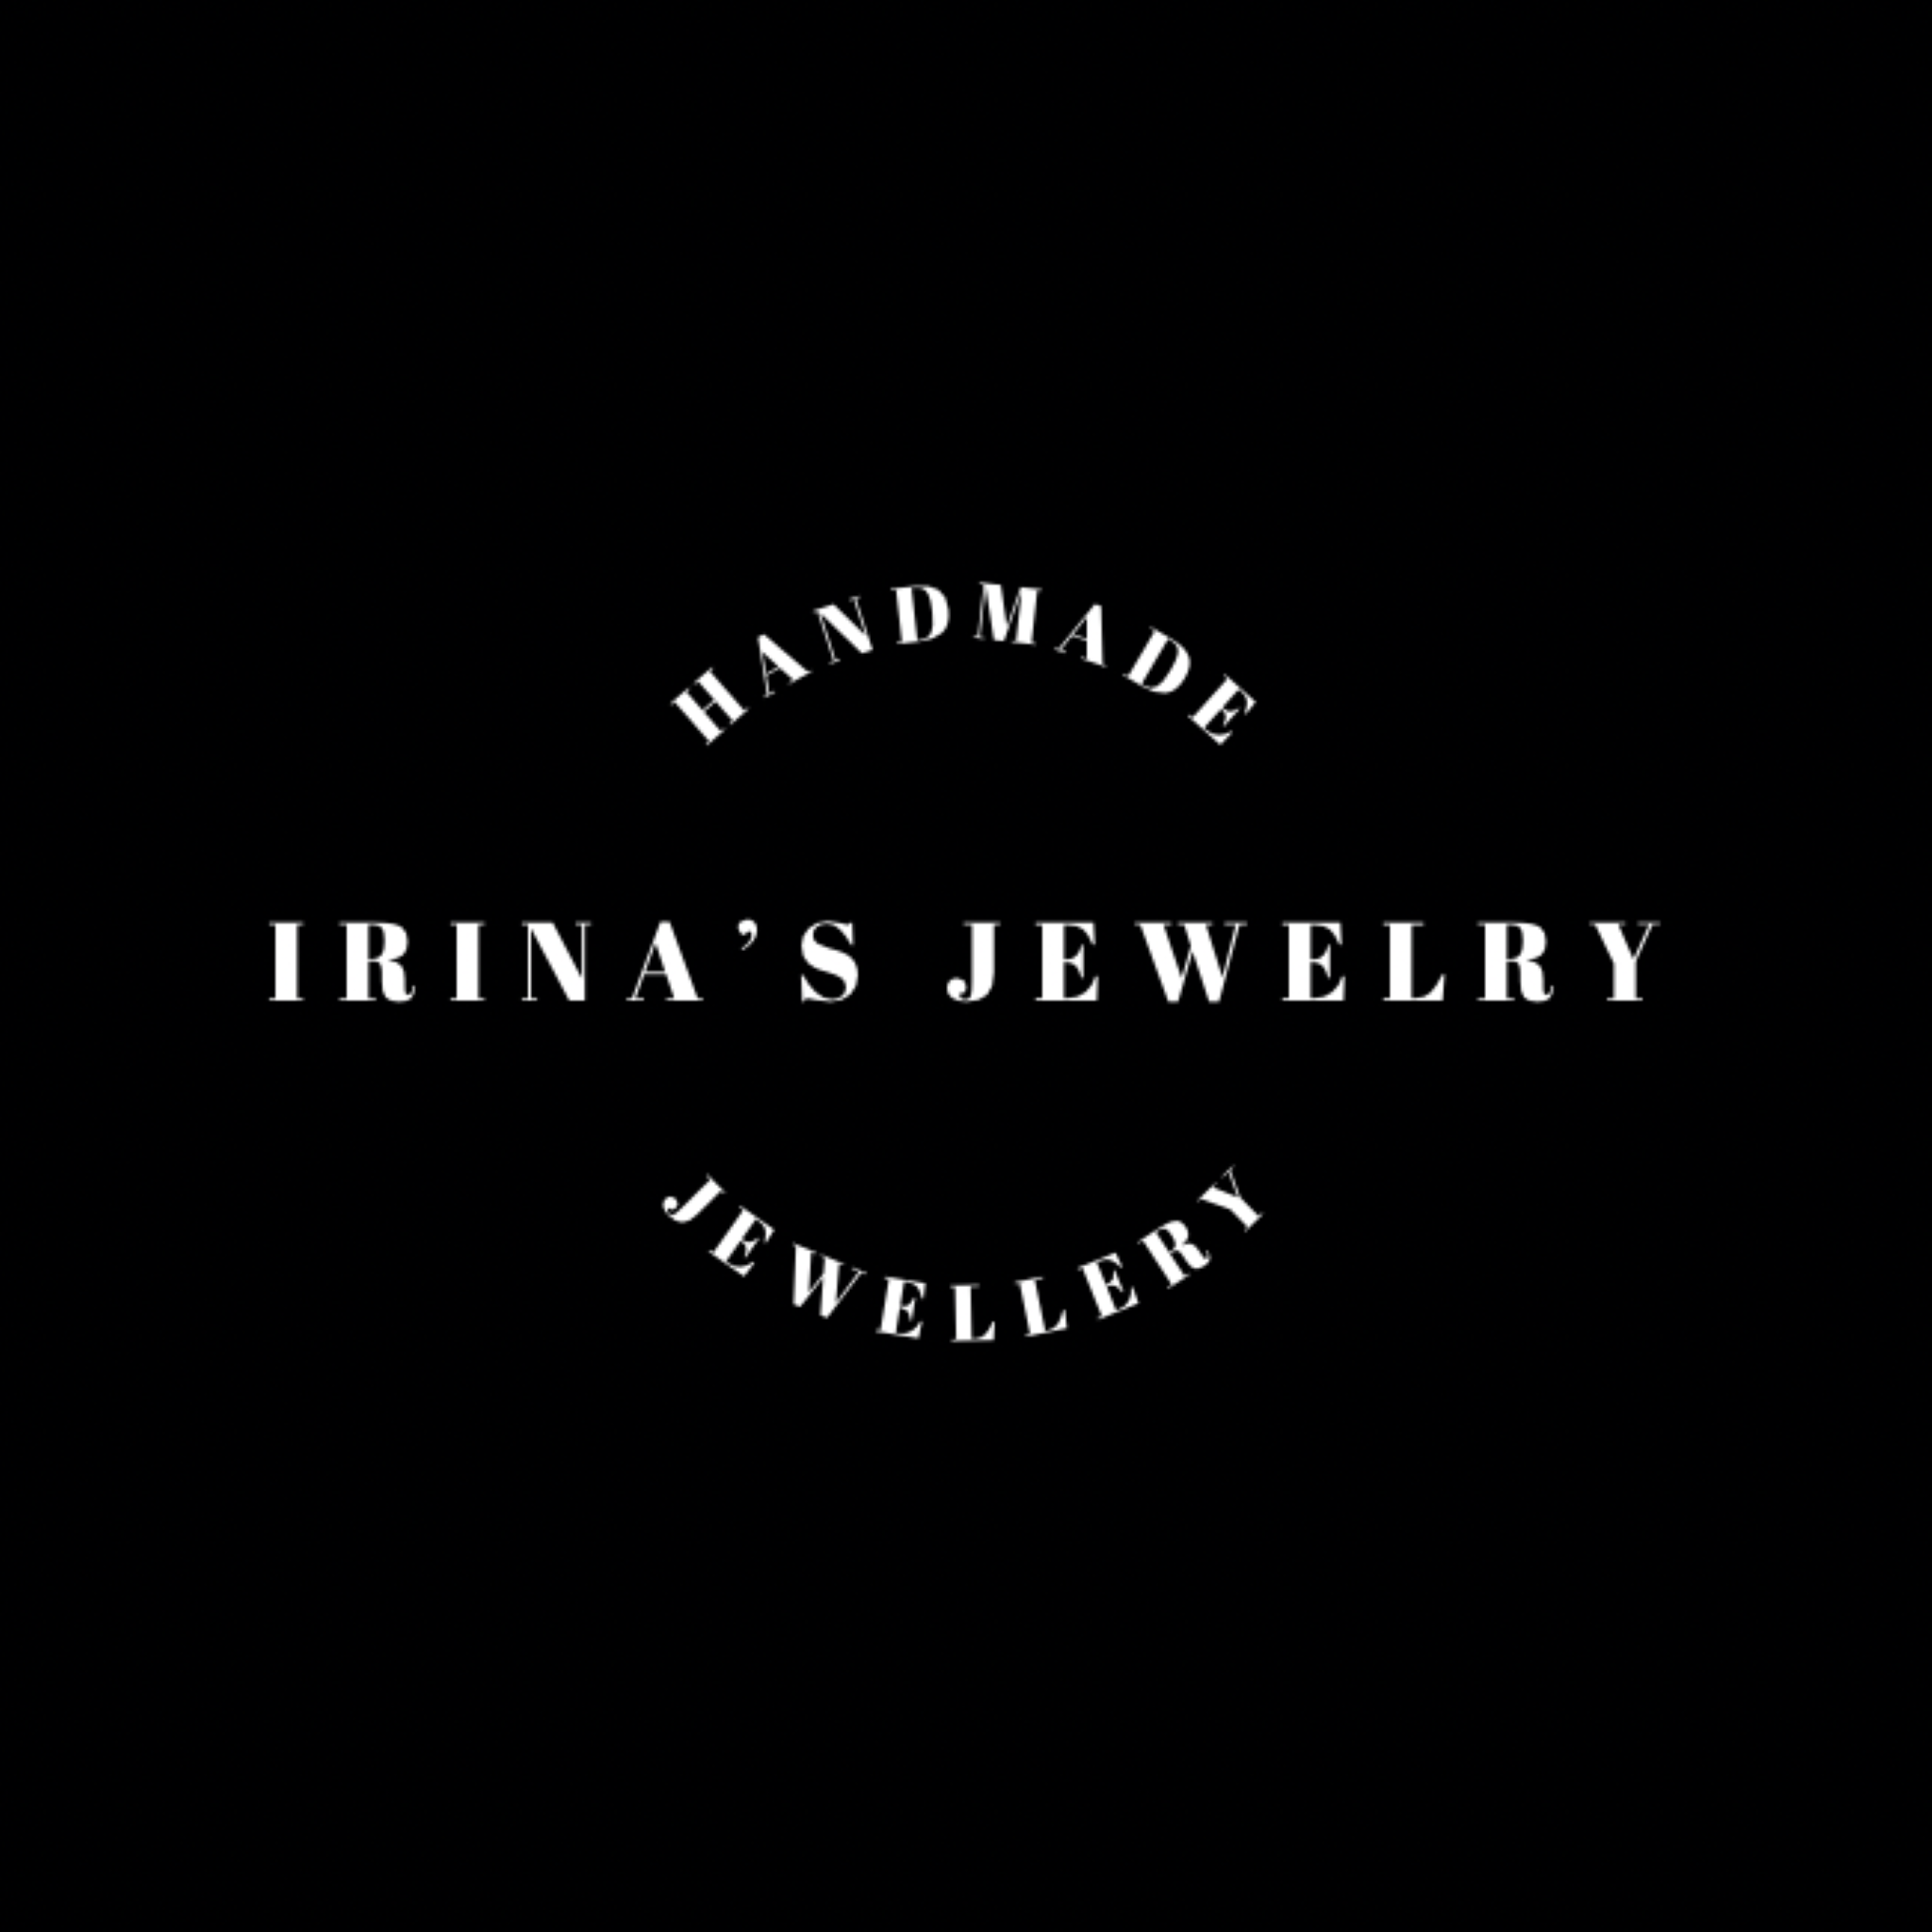 Irina's Jewelry